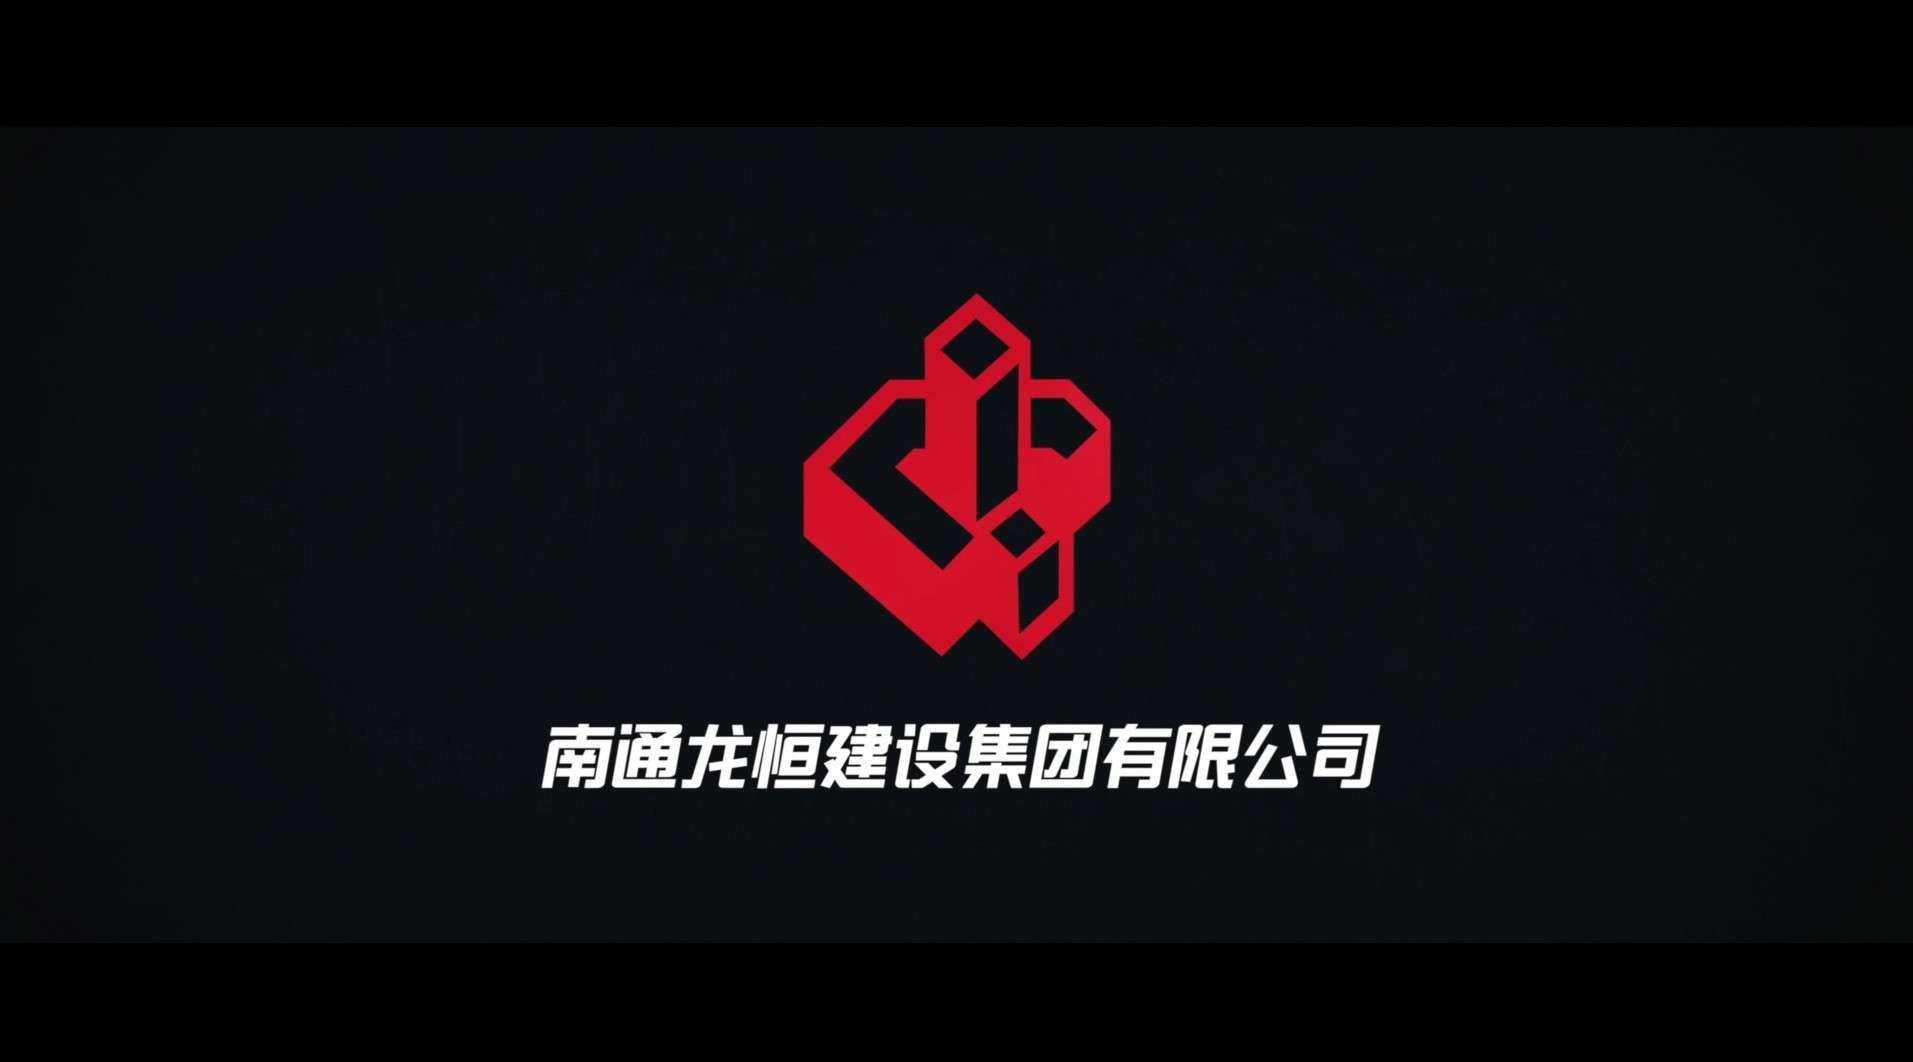 南通龙恒建设集团有限公司宣传片